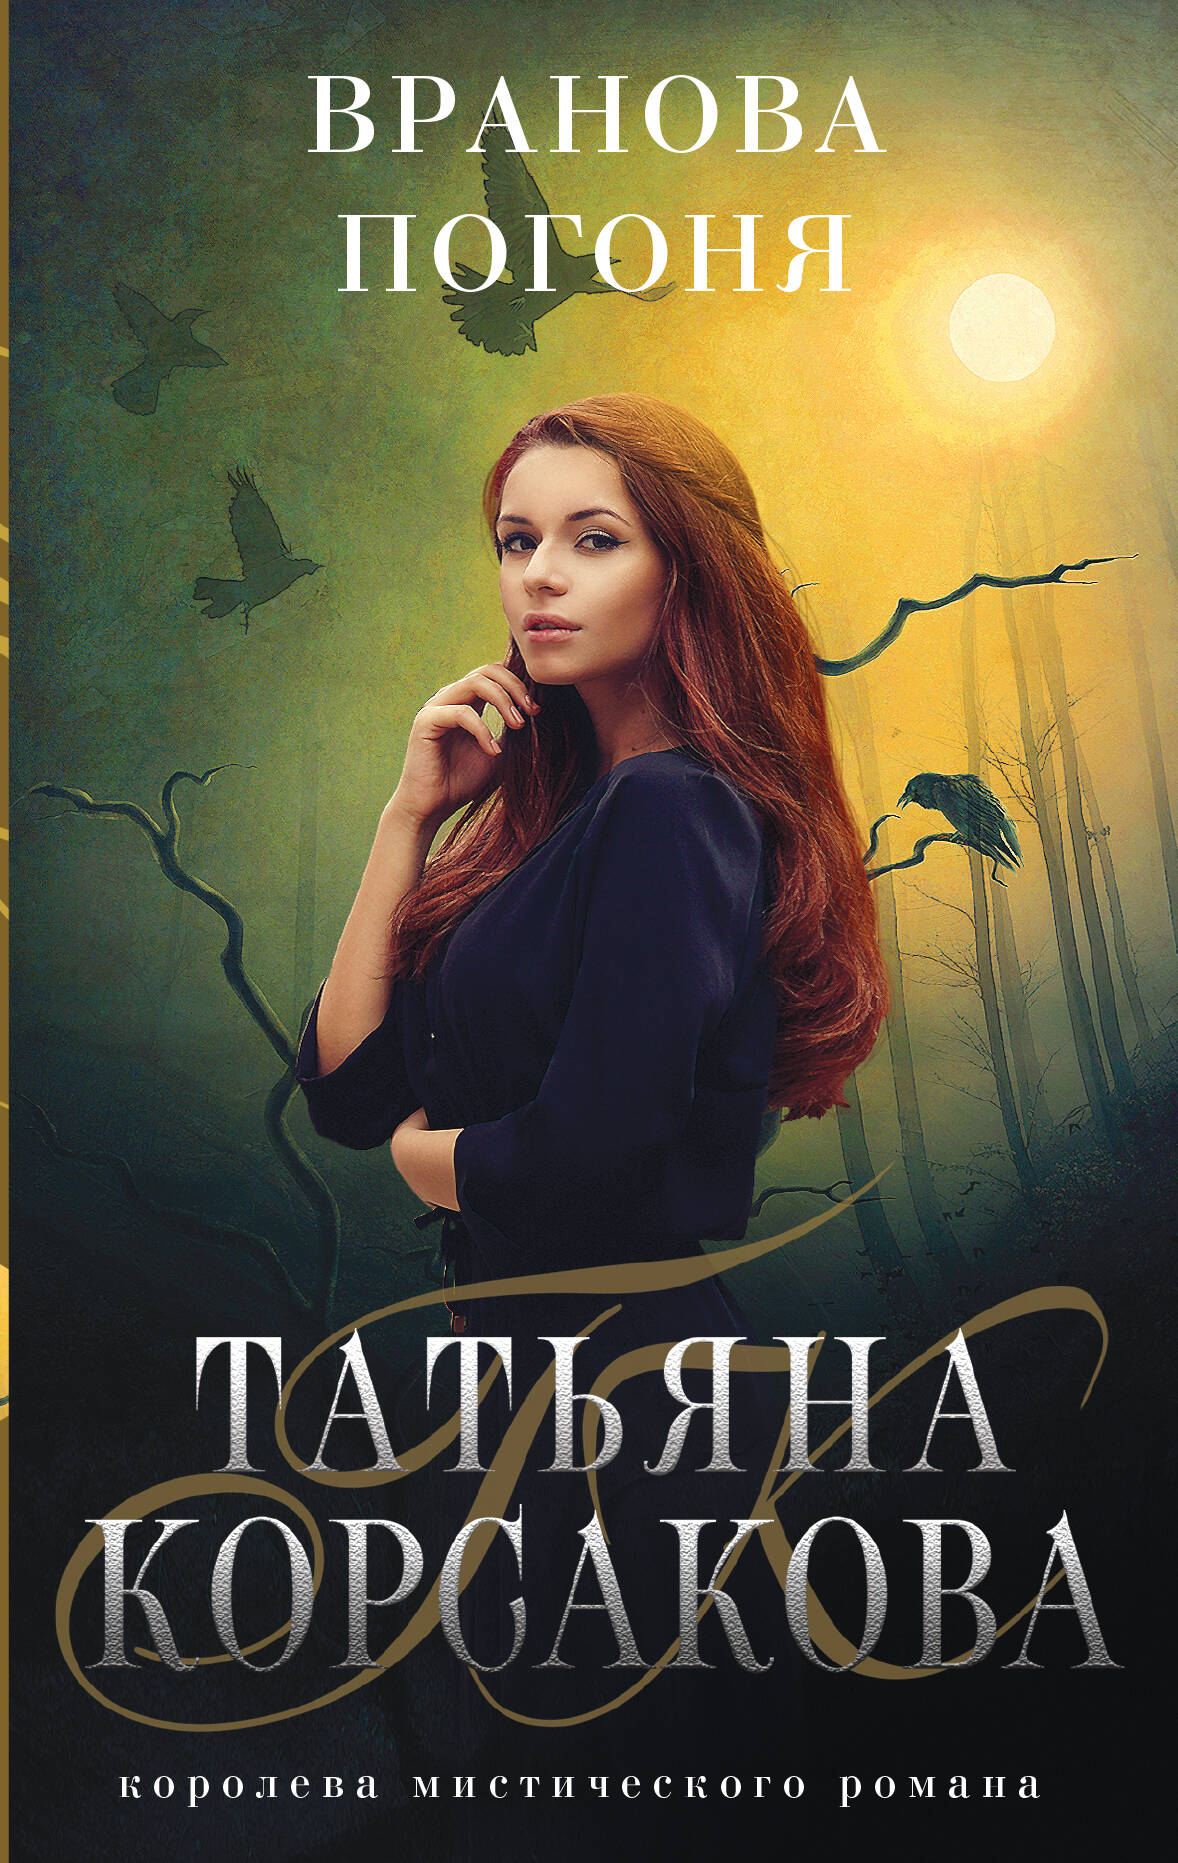 Корсакова Татьяна - Вранова погоня